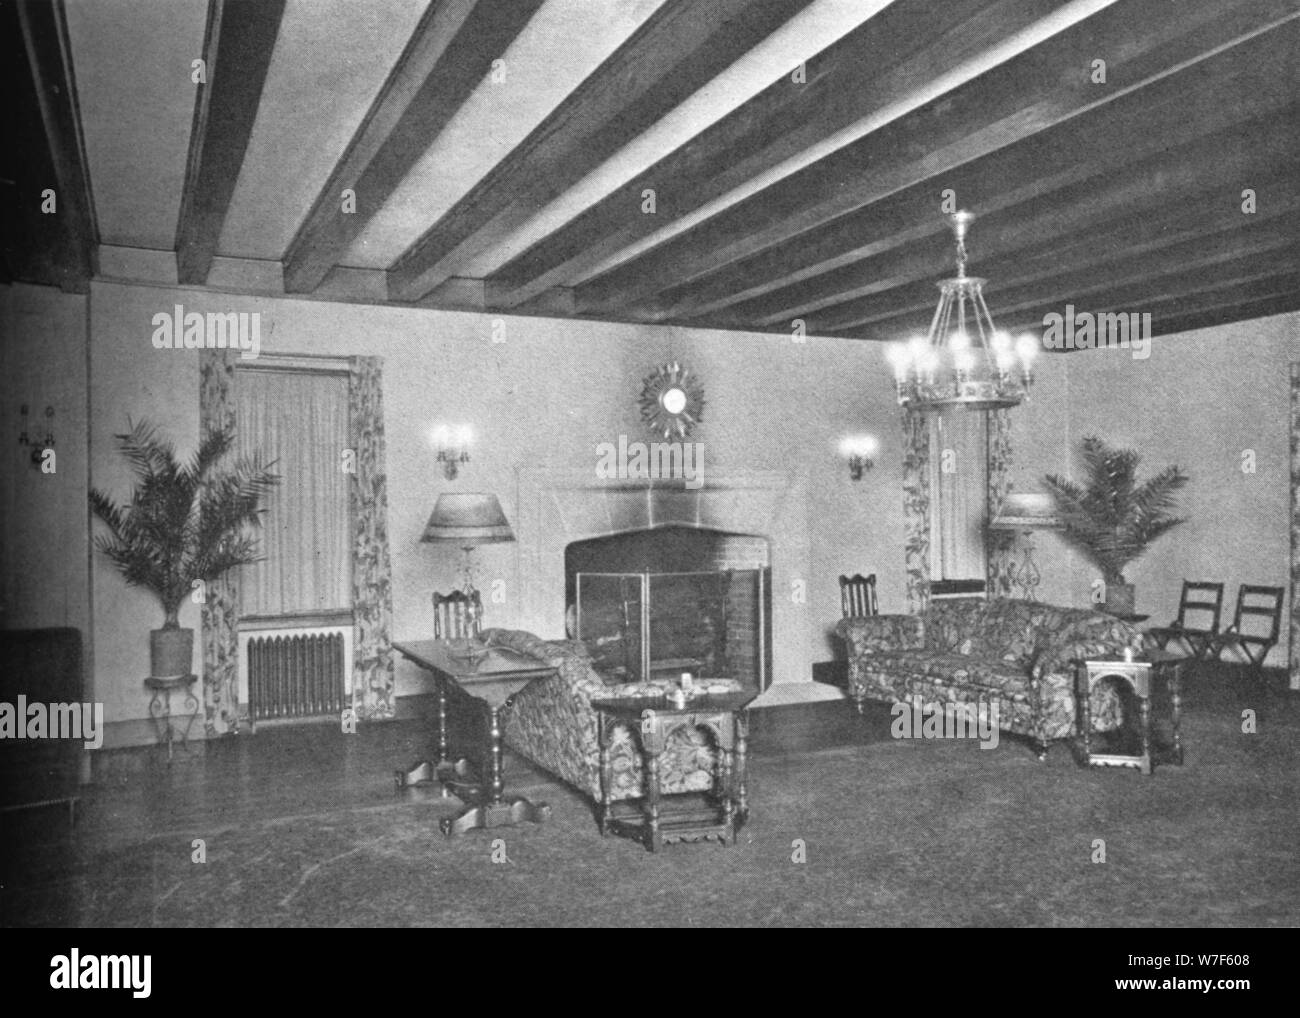 Dettaglio, soggiorno, Bonnie Briar Country Club, Larchmont, New York, 1925. Artista: sconosciuto. Foto Stock